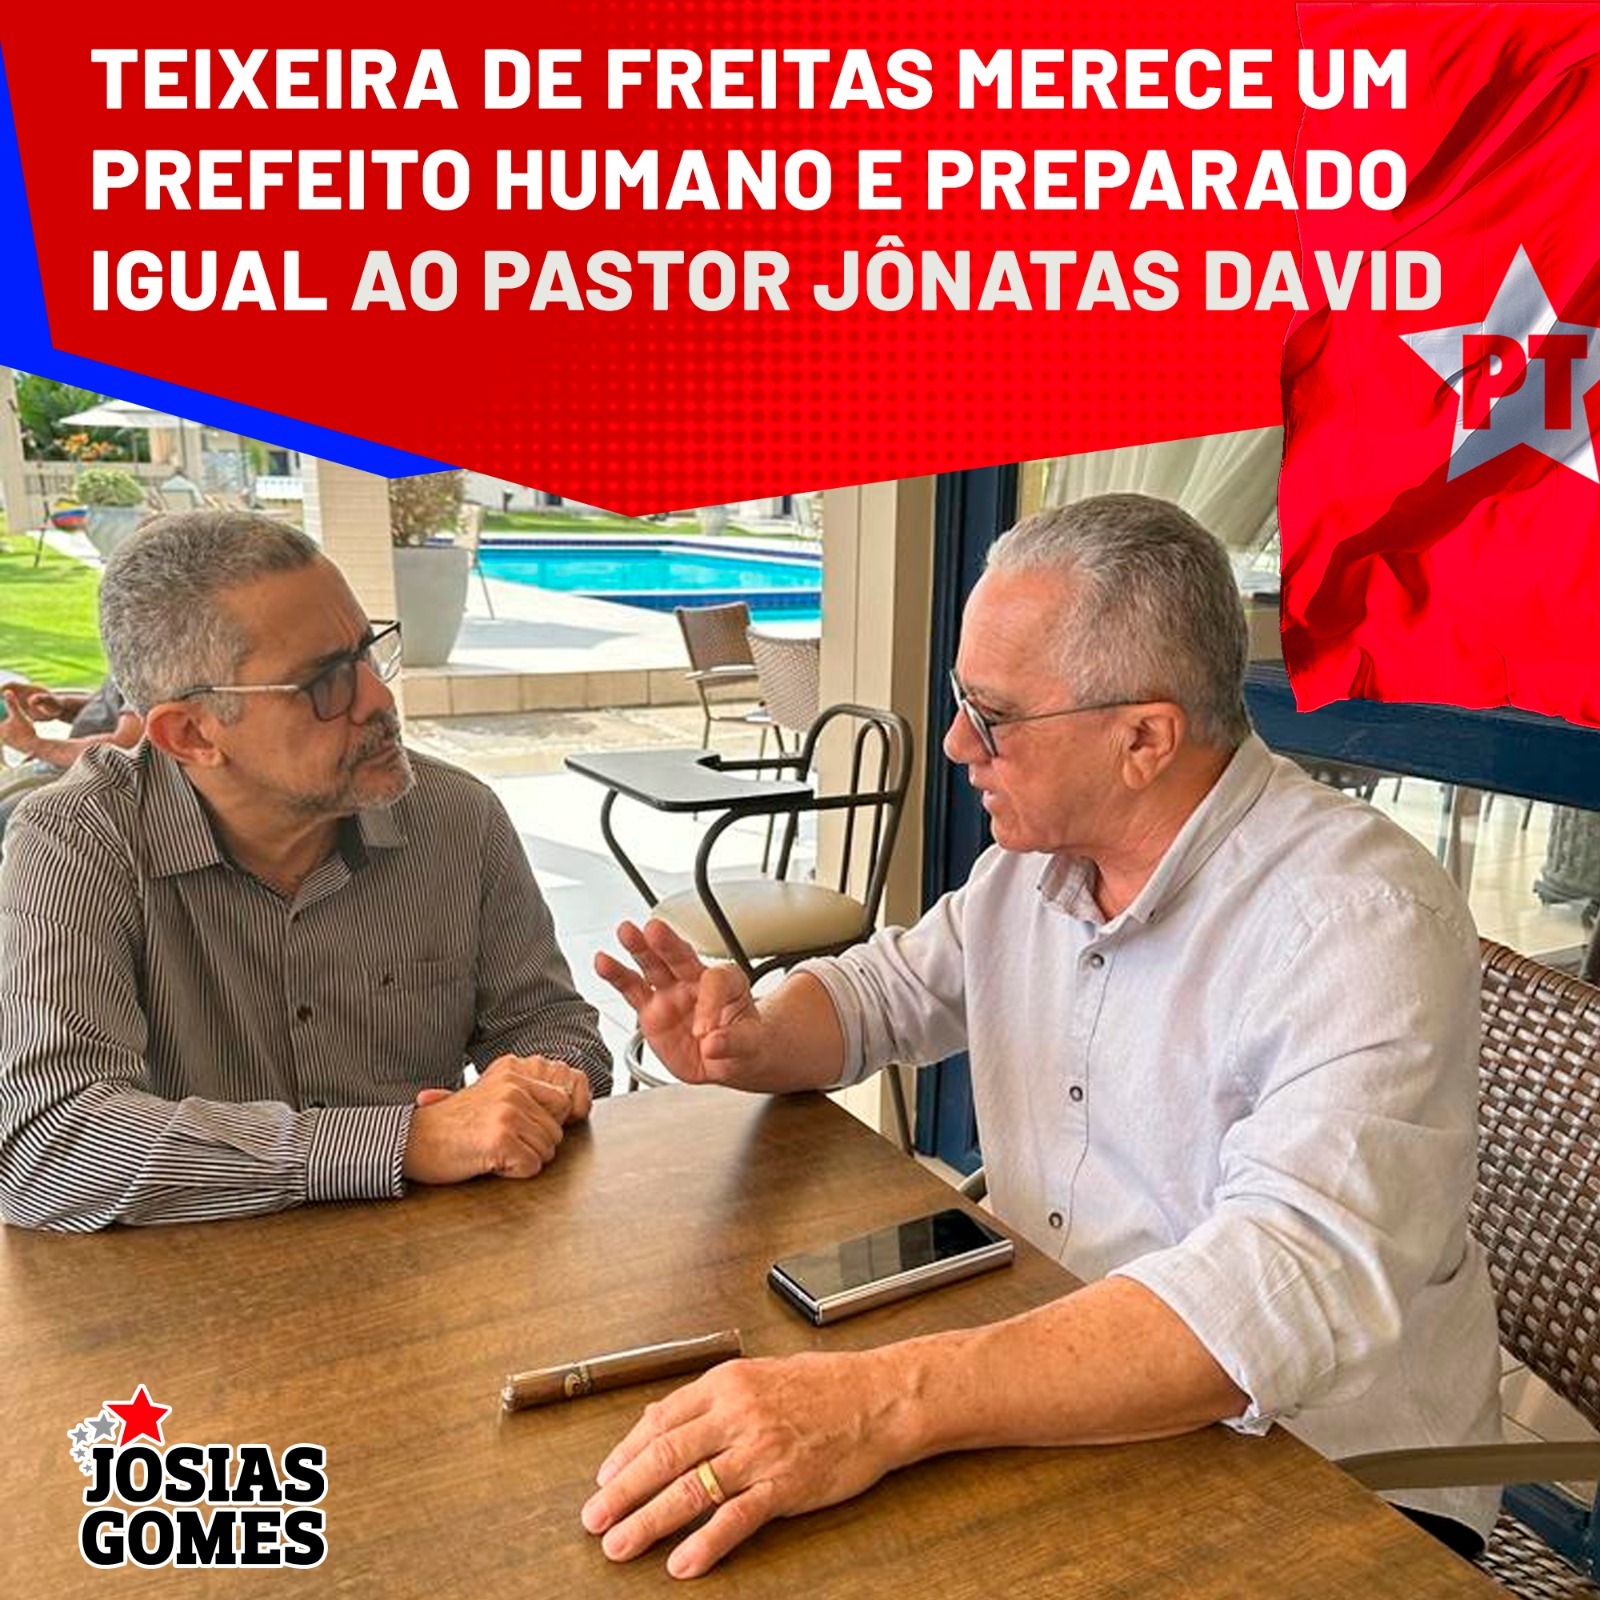 Pastor Jônatas, O Nosso Pré-candidato A Prefeito De Teixeira De Freitas